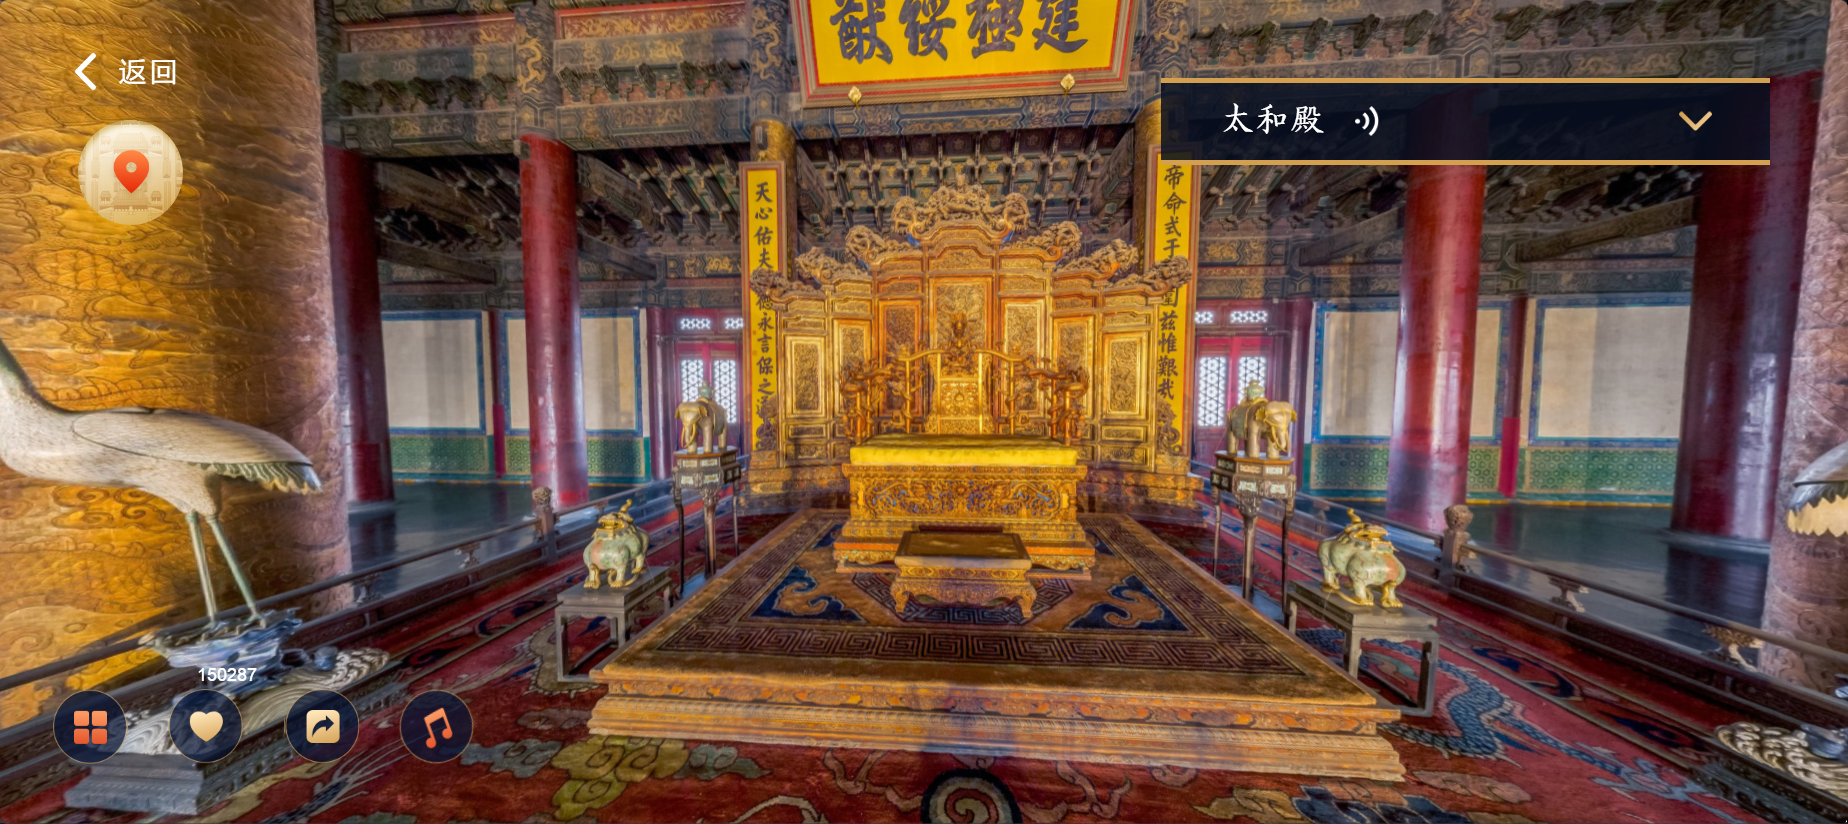 全景故宫可以近距离地观看皇帝宝座,进入皇帝寝殿,搭配文字解析,干货